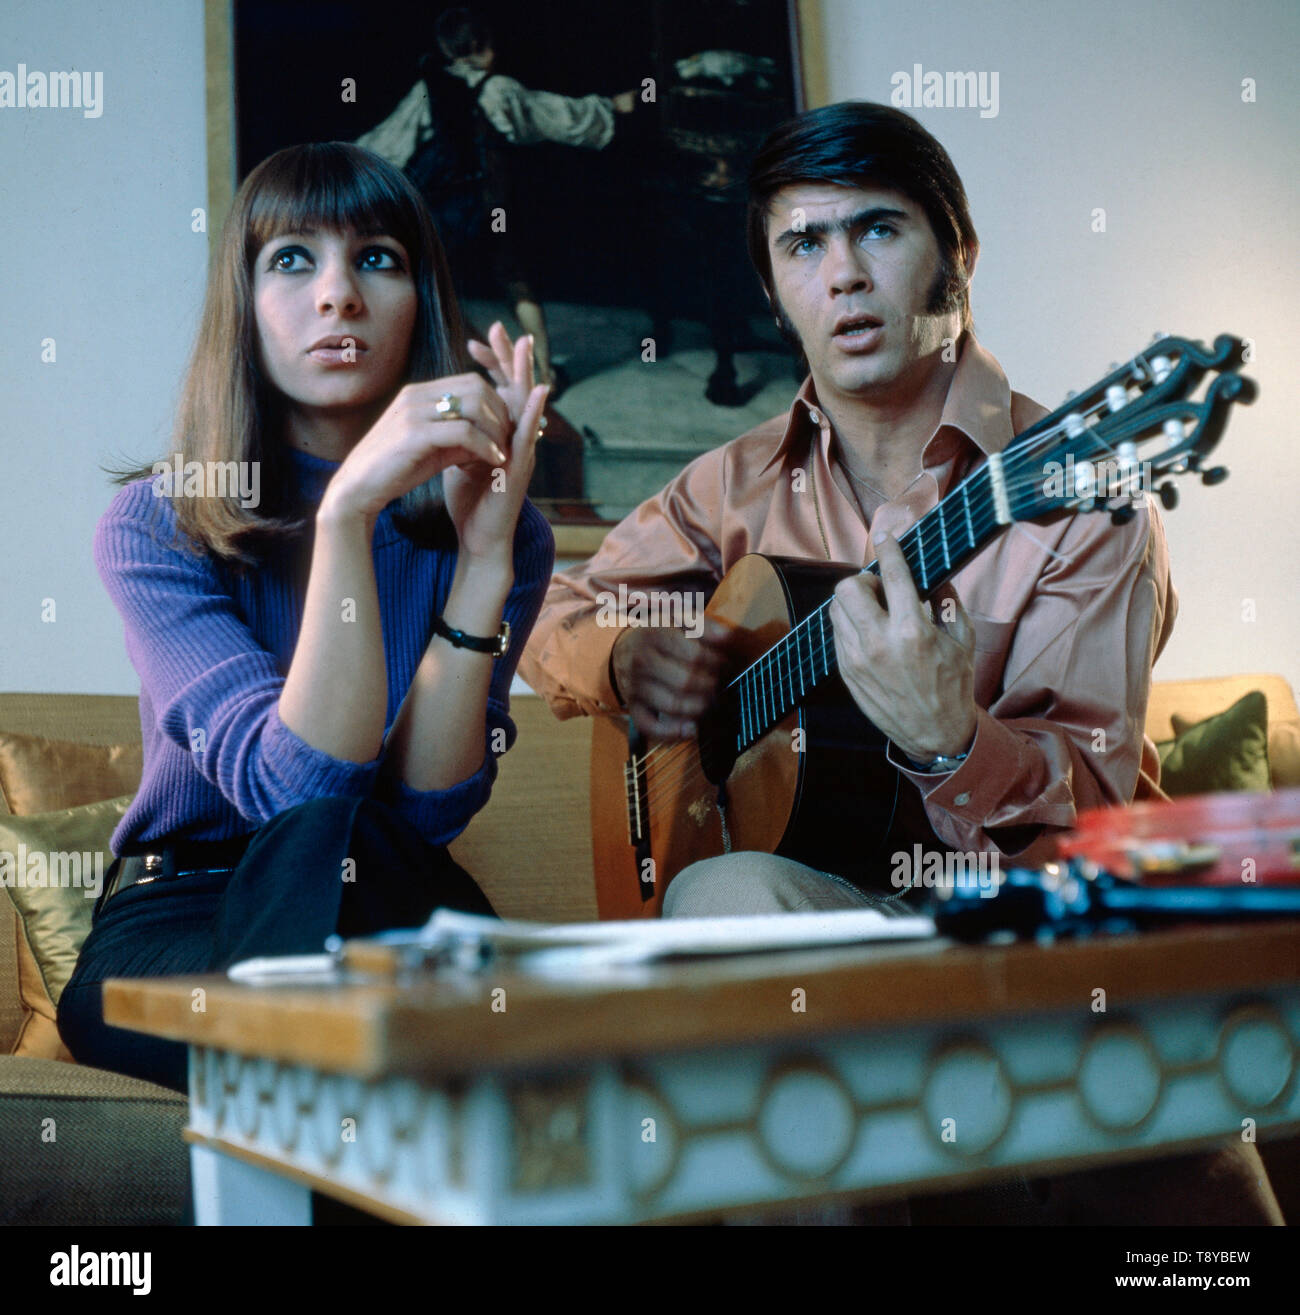 Das israelische Gesangsduo Esther & Abi Ofarim musizieren gemeinsam 1967 5/6 einer Homestory. Die Israelische vocal duo Esther & Abi Ofarim machen zusammen Musik im Jahre 1967 während eines Home Geschichte. Stockfoto